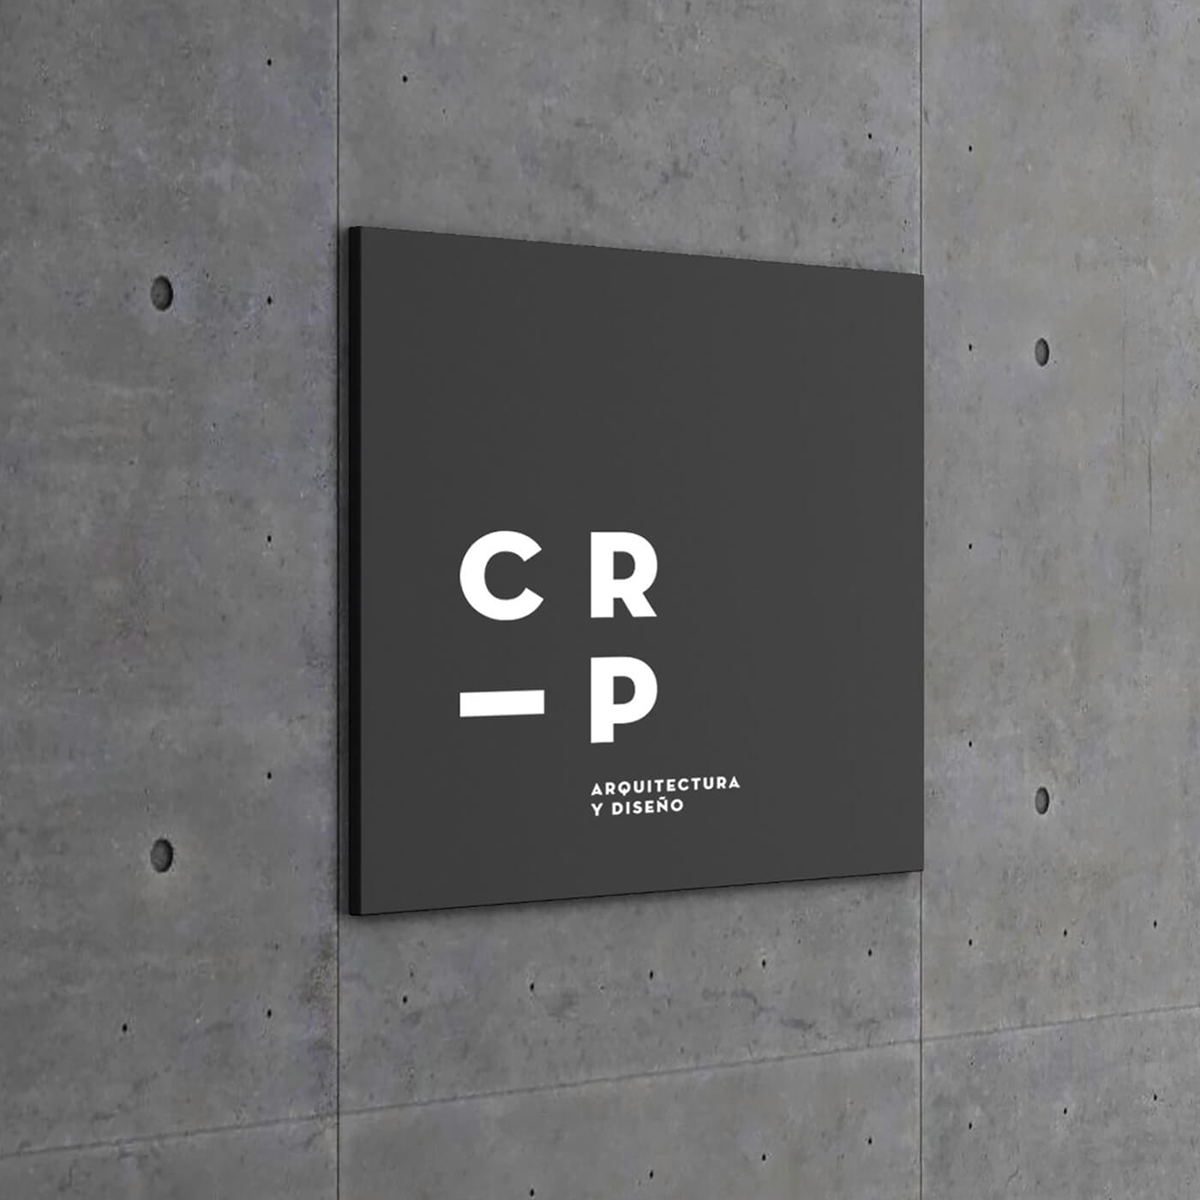 Diseño y desarrollo de identidad visual corporativa para CRP Arquitectura y diseño. Detalle señalética exterior.